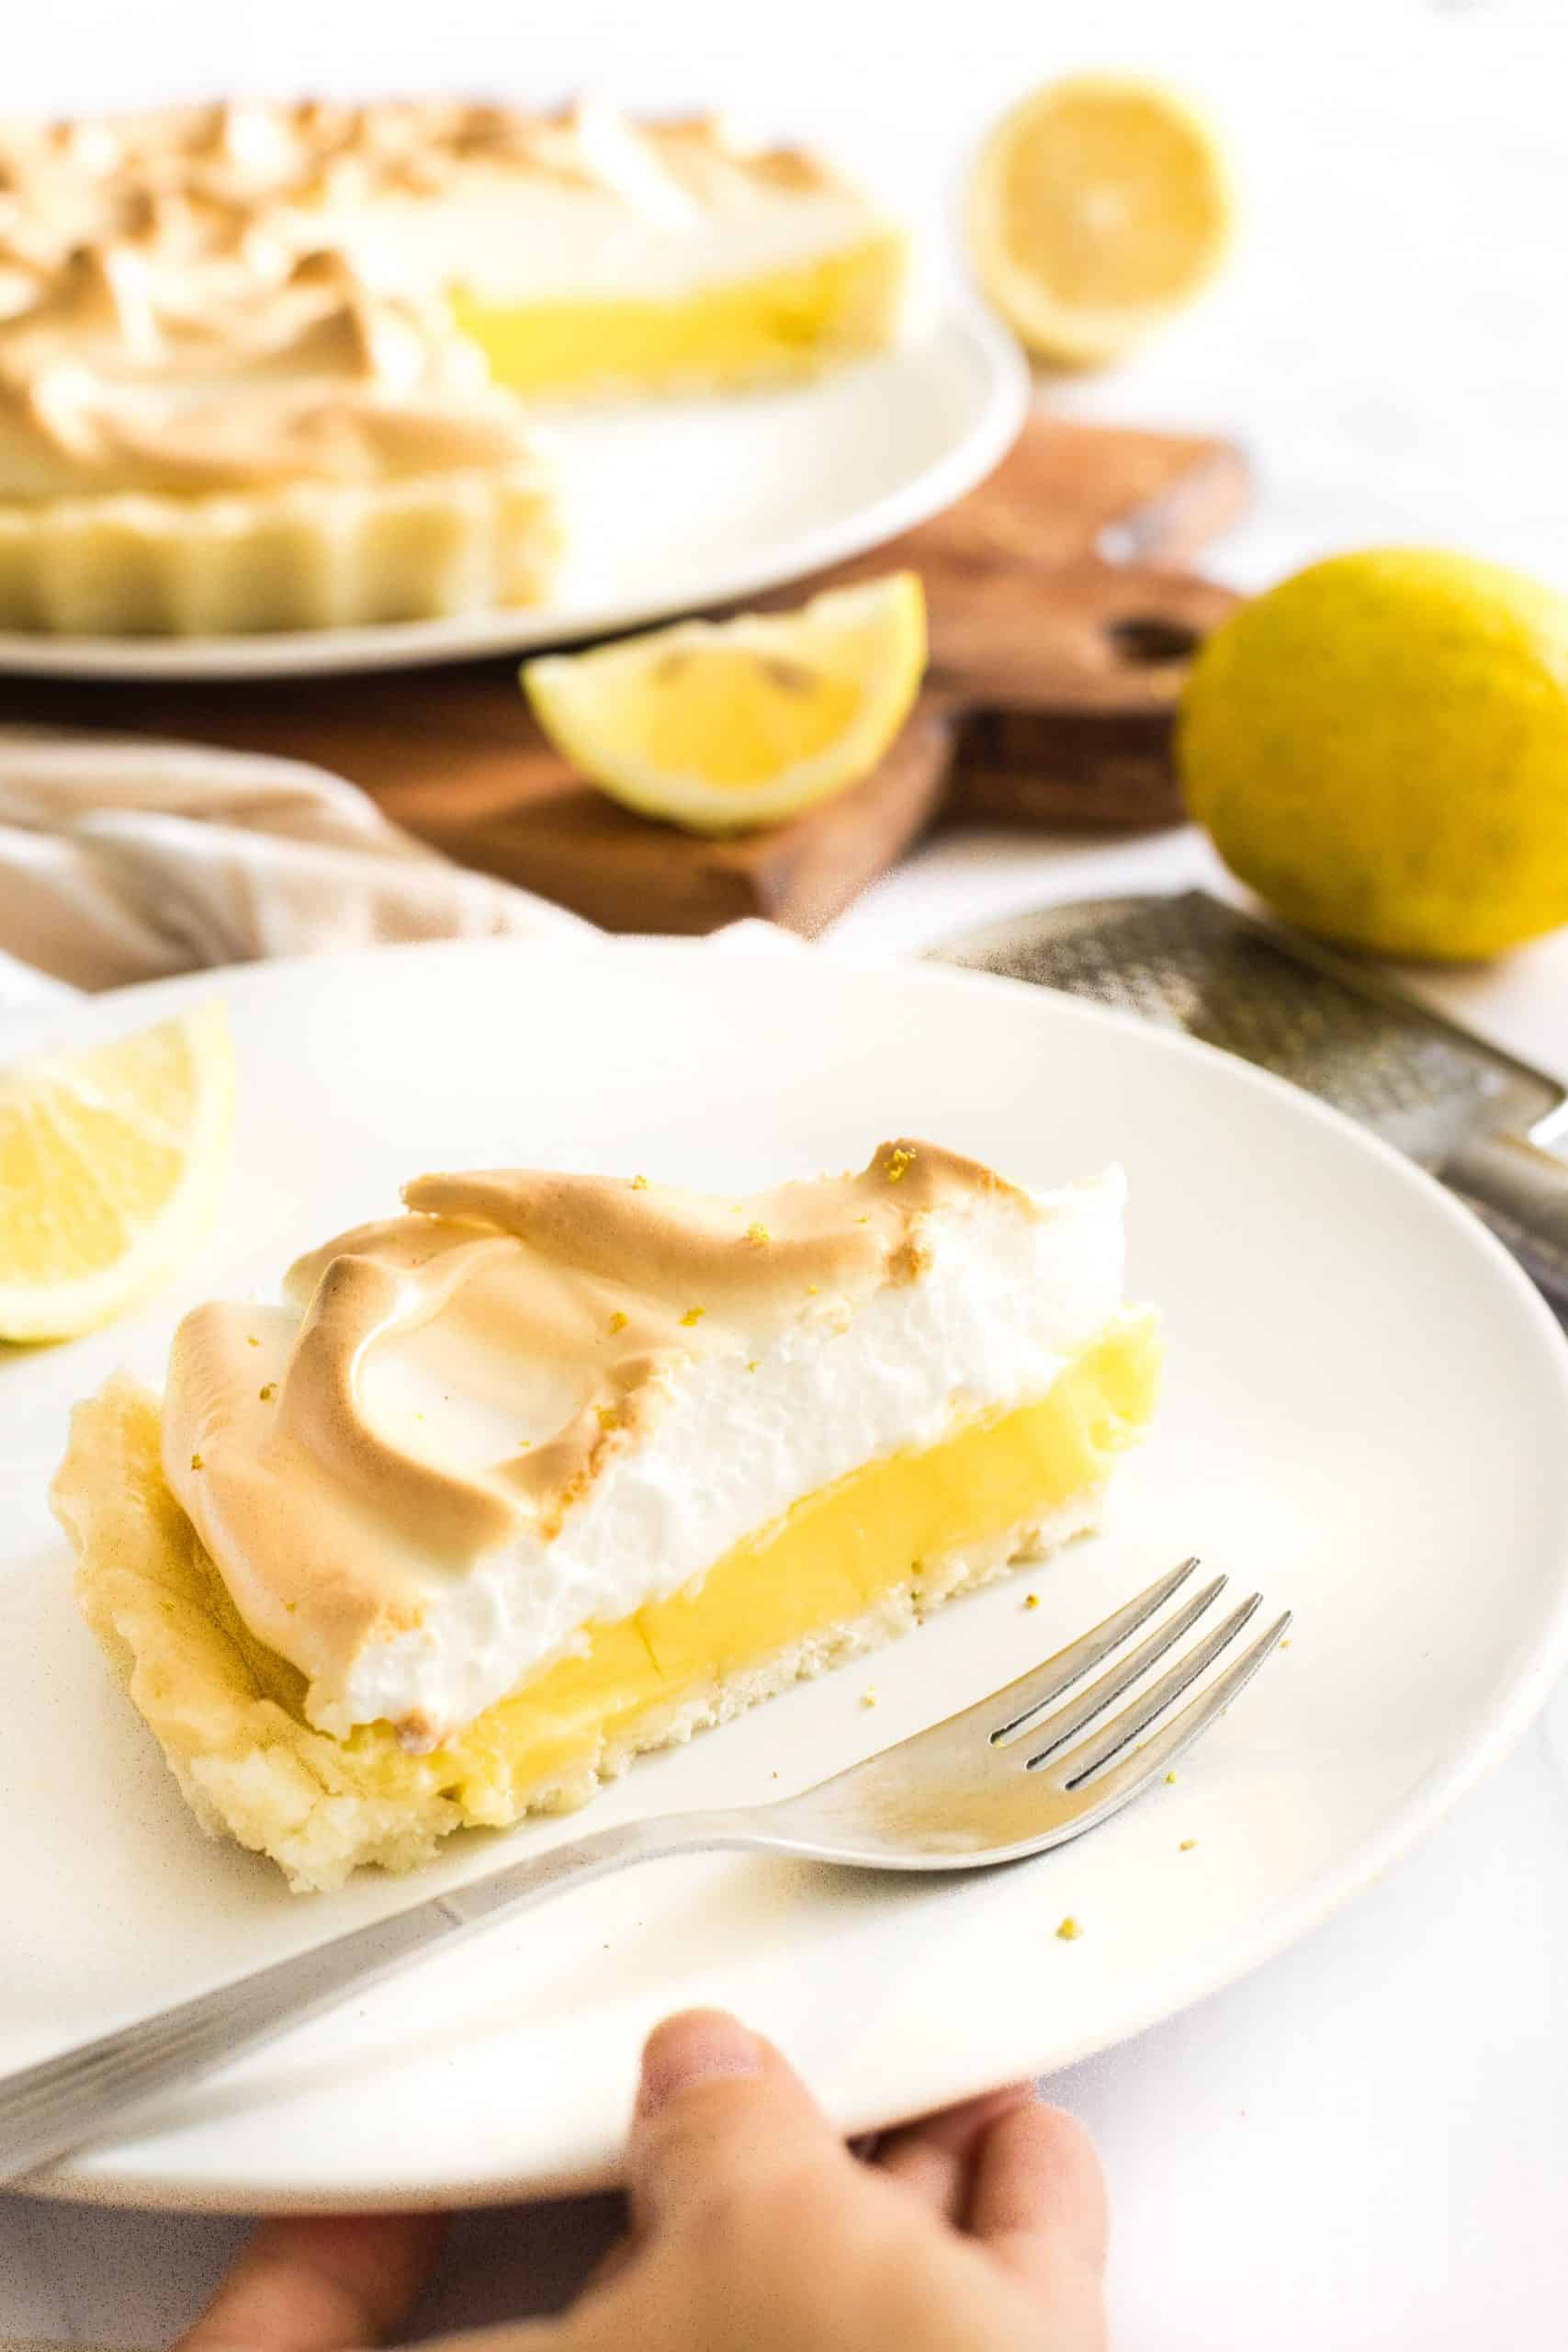 Plăcintă cu lămâie și meringue fără gluten lemon meringue pie (fără lapte)